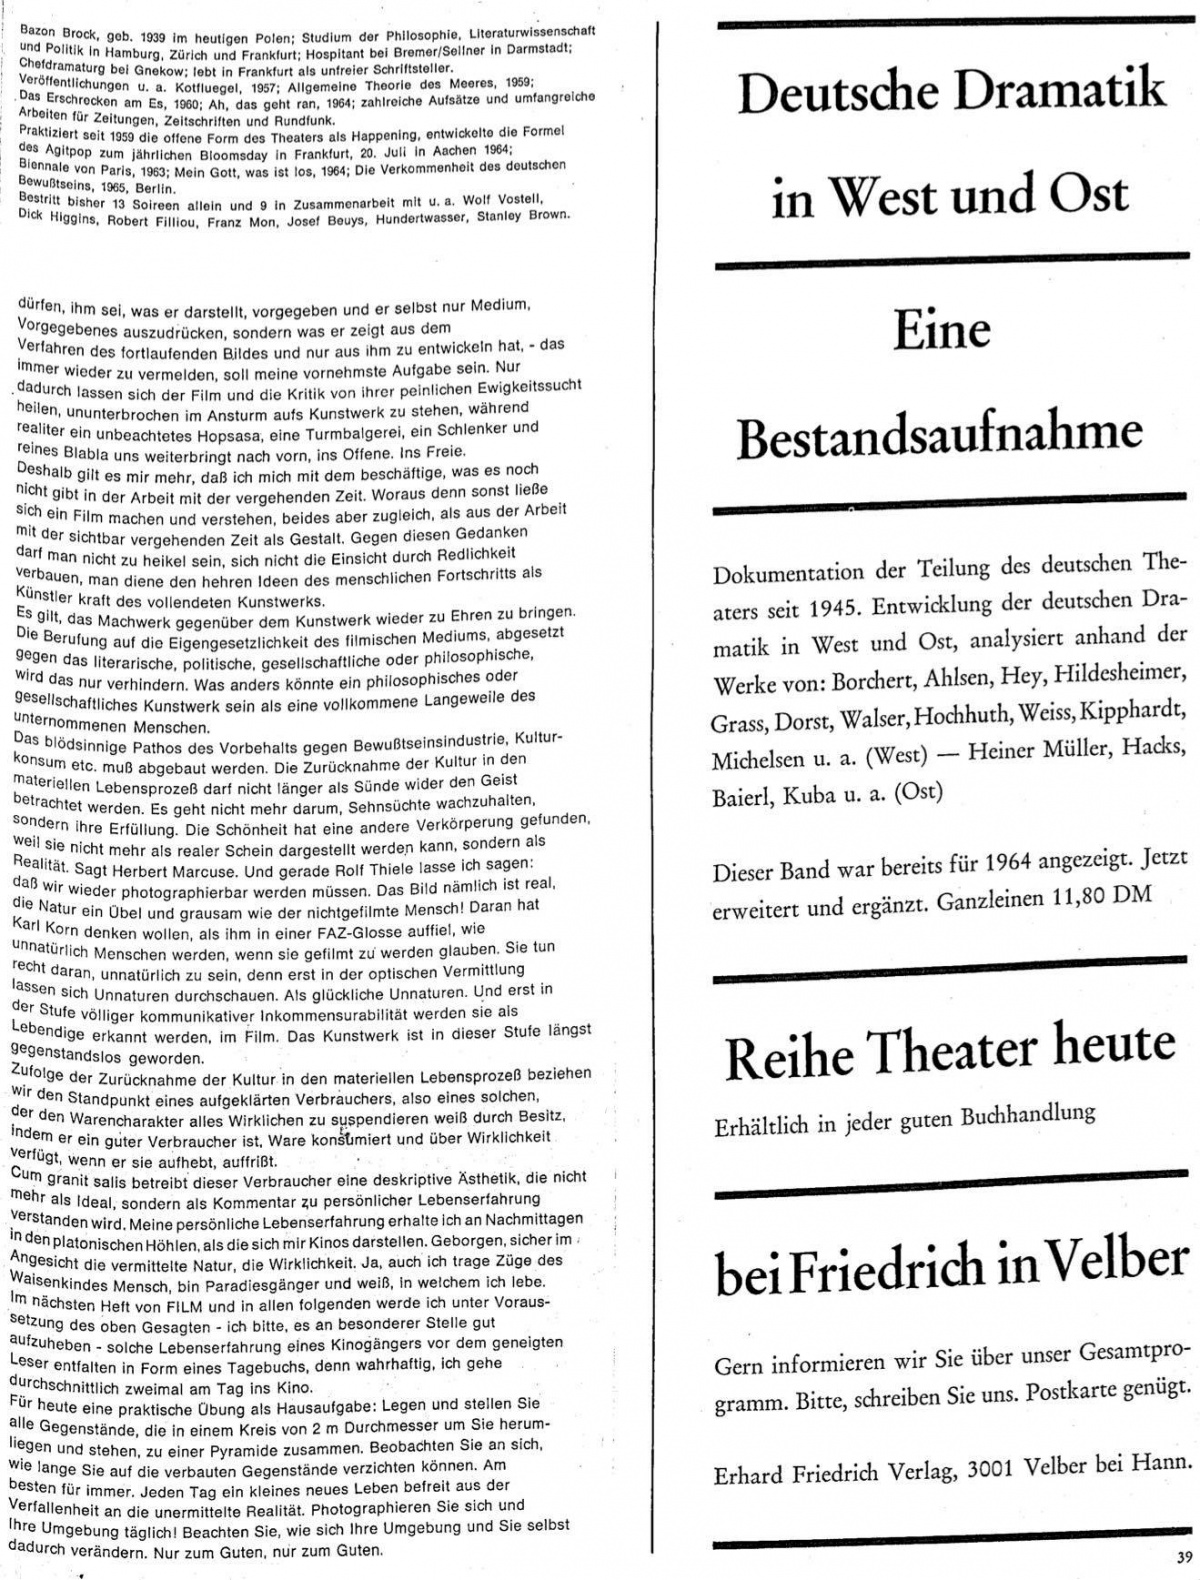 Film Zeitschrift 4/65 Text S.39